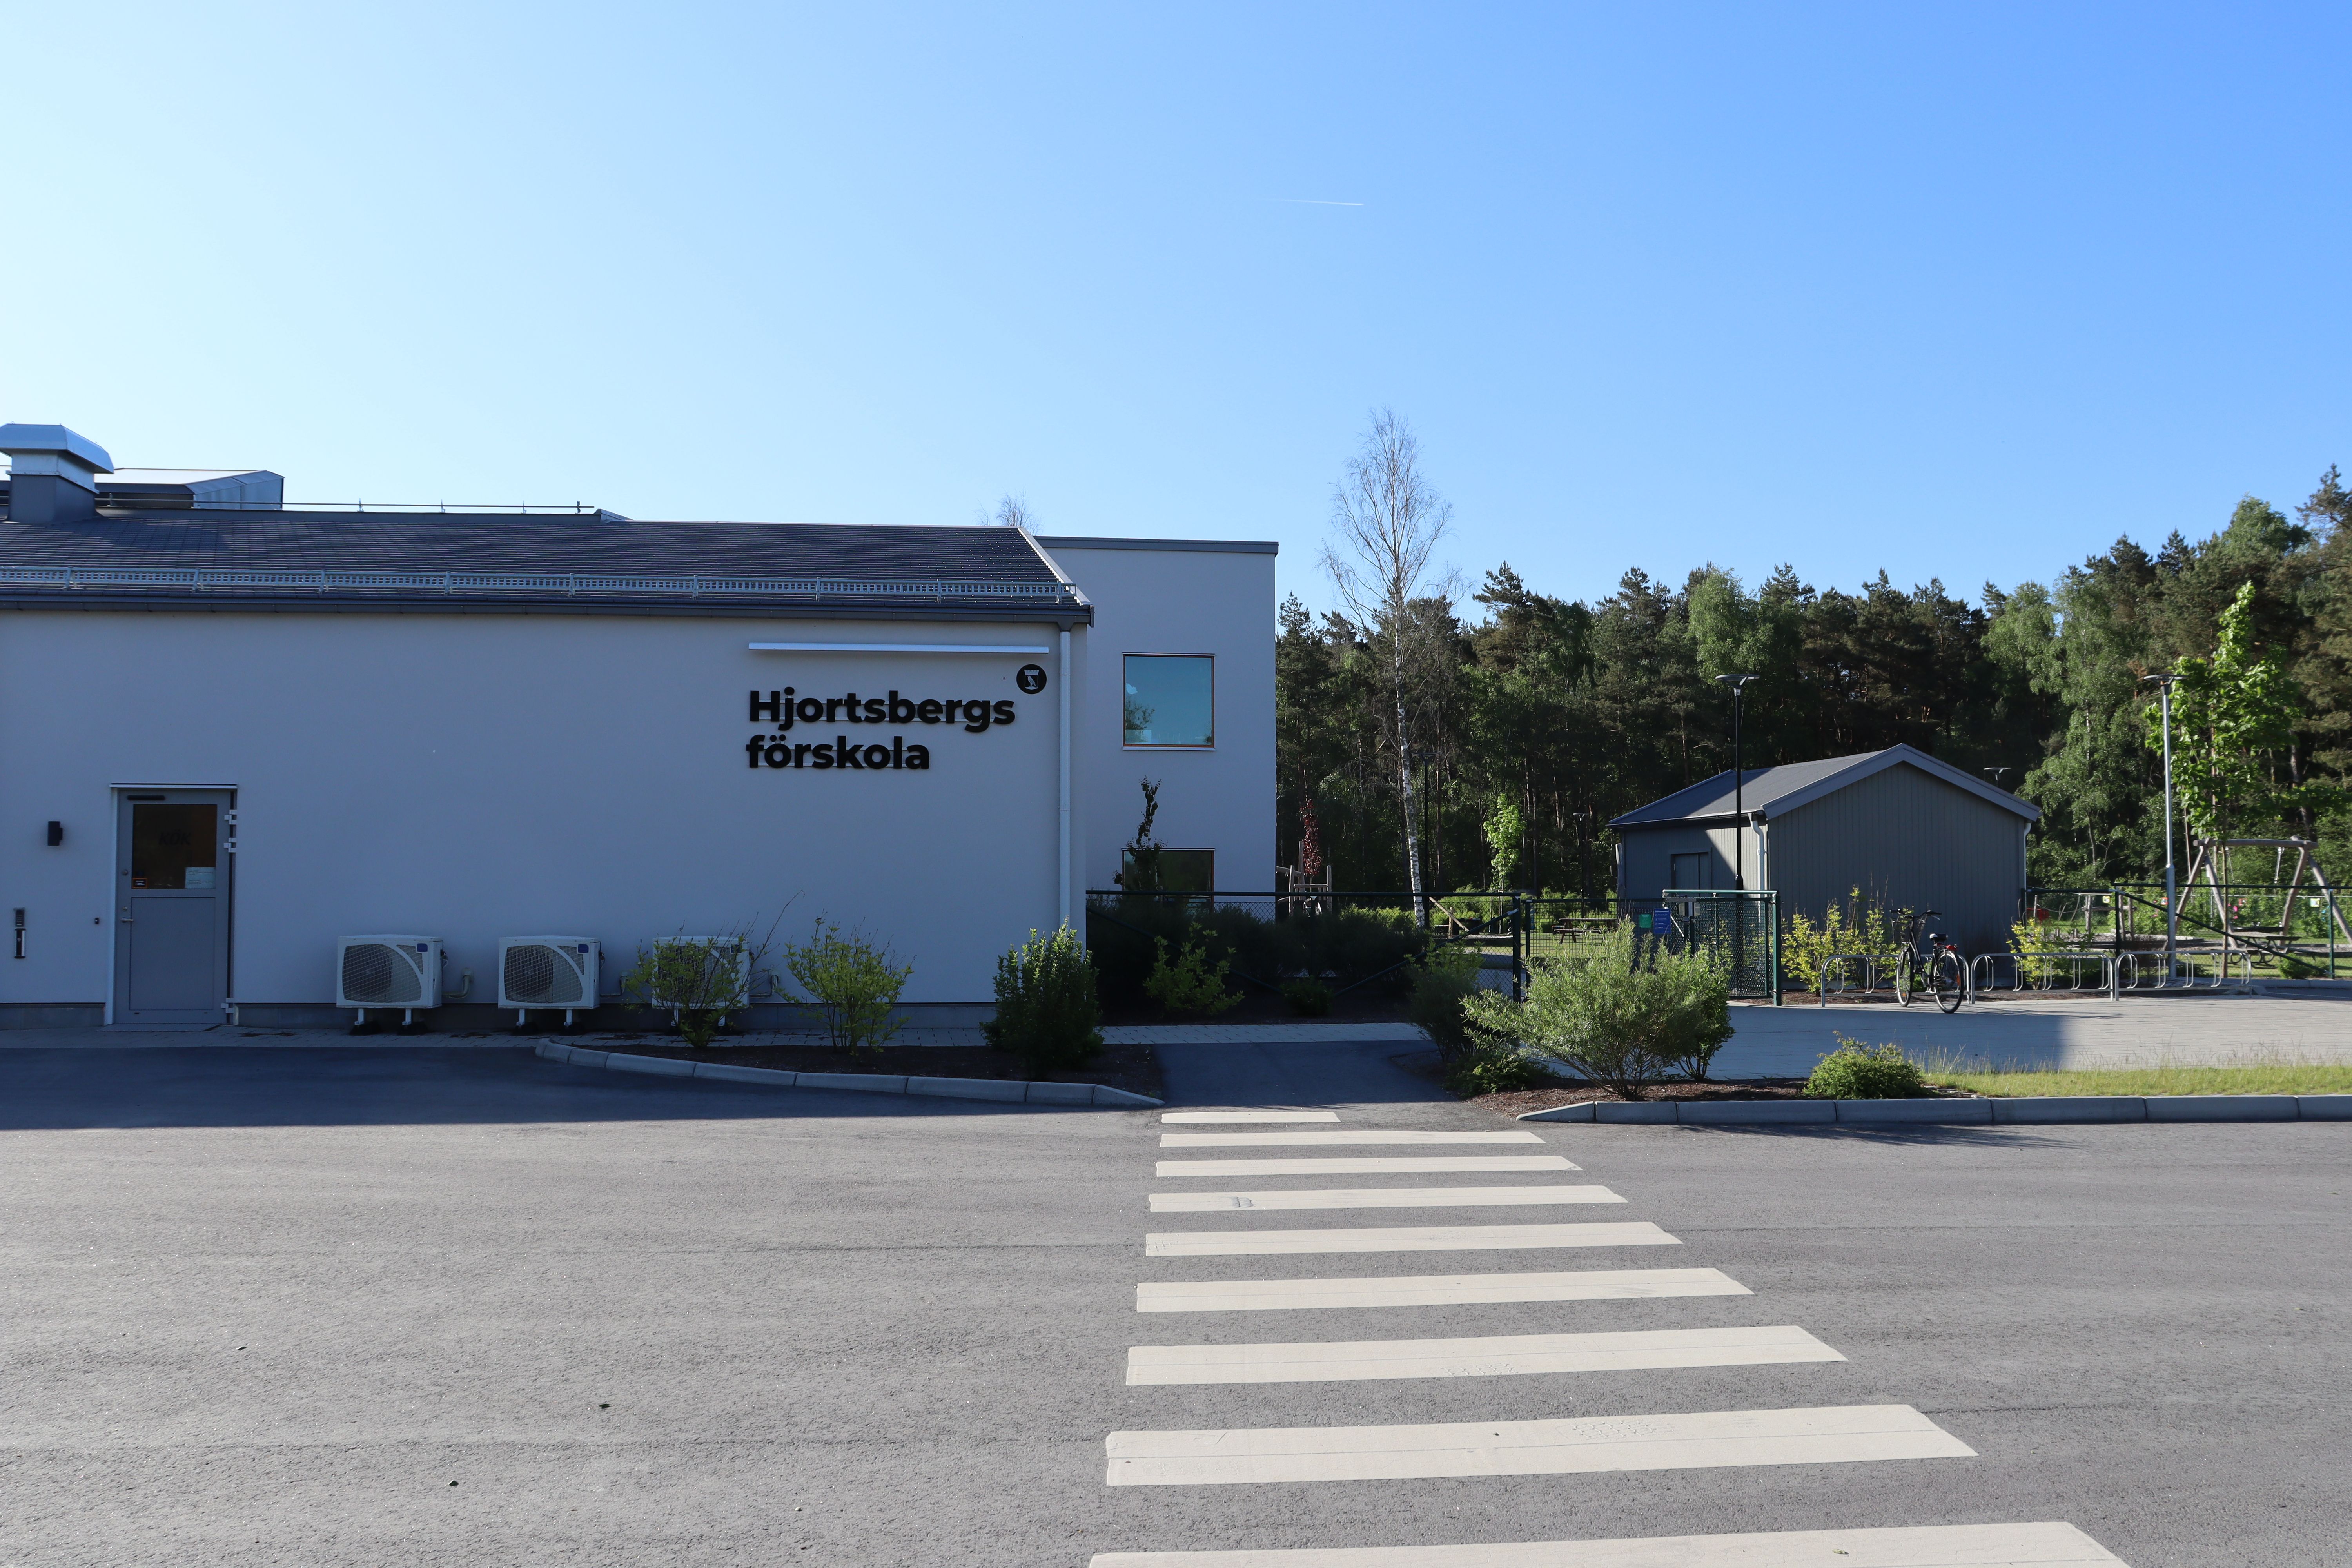 Låg vit byggnad med Hjortsbergs förskola på fasaden, övergångsställe i förgrunden